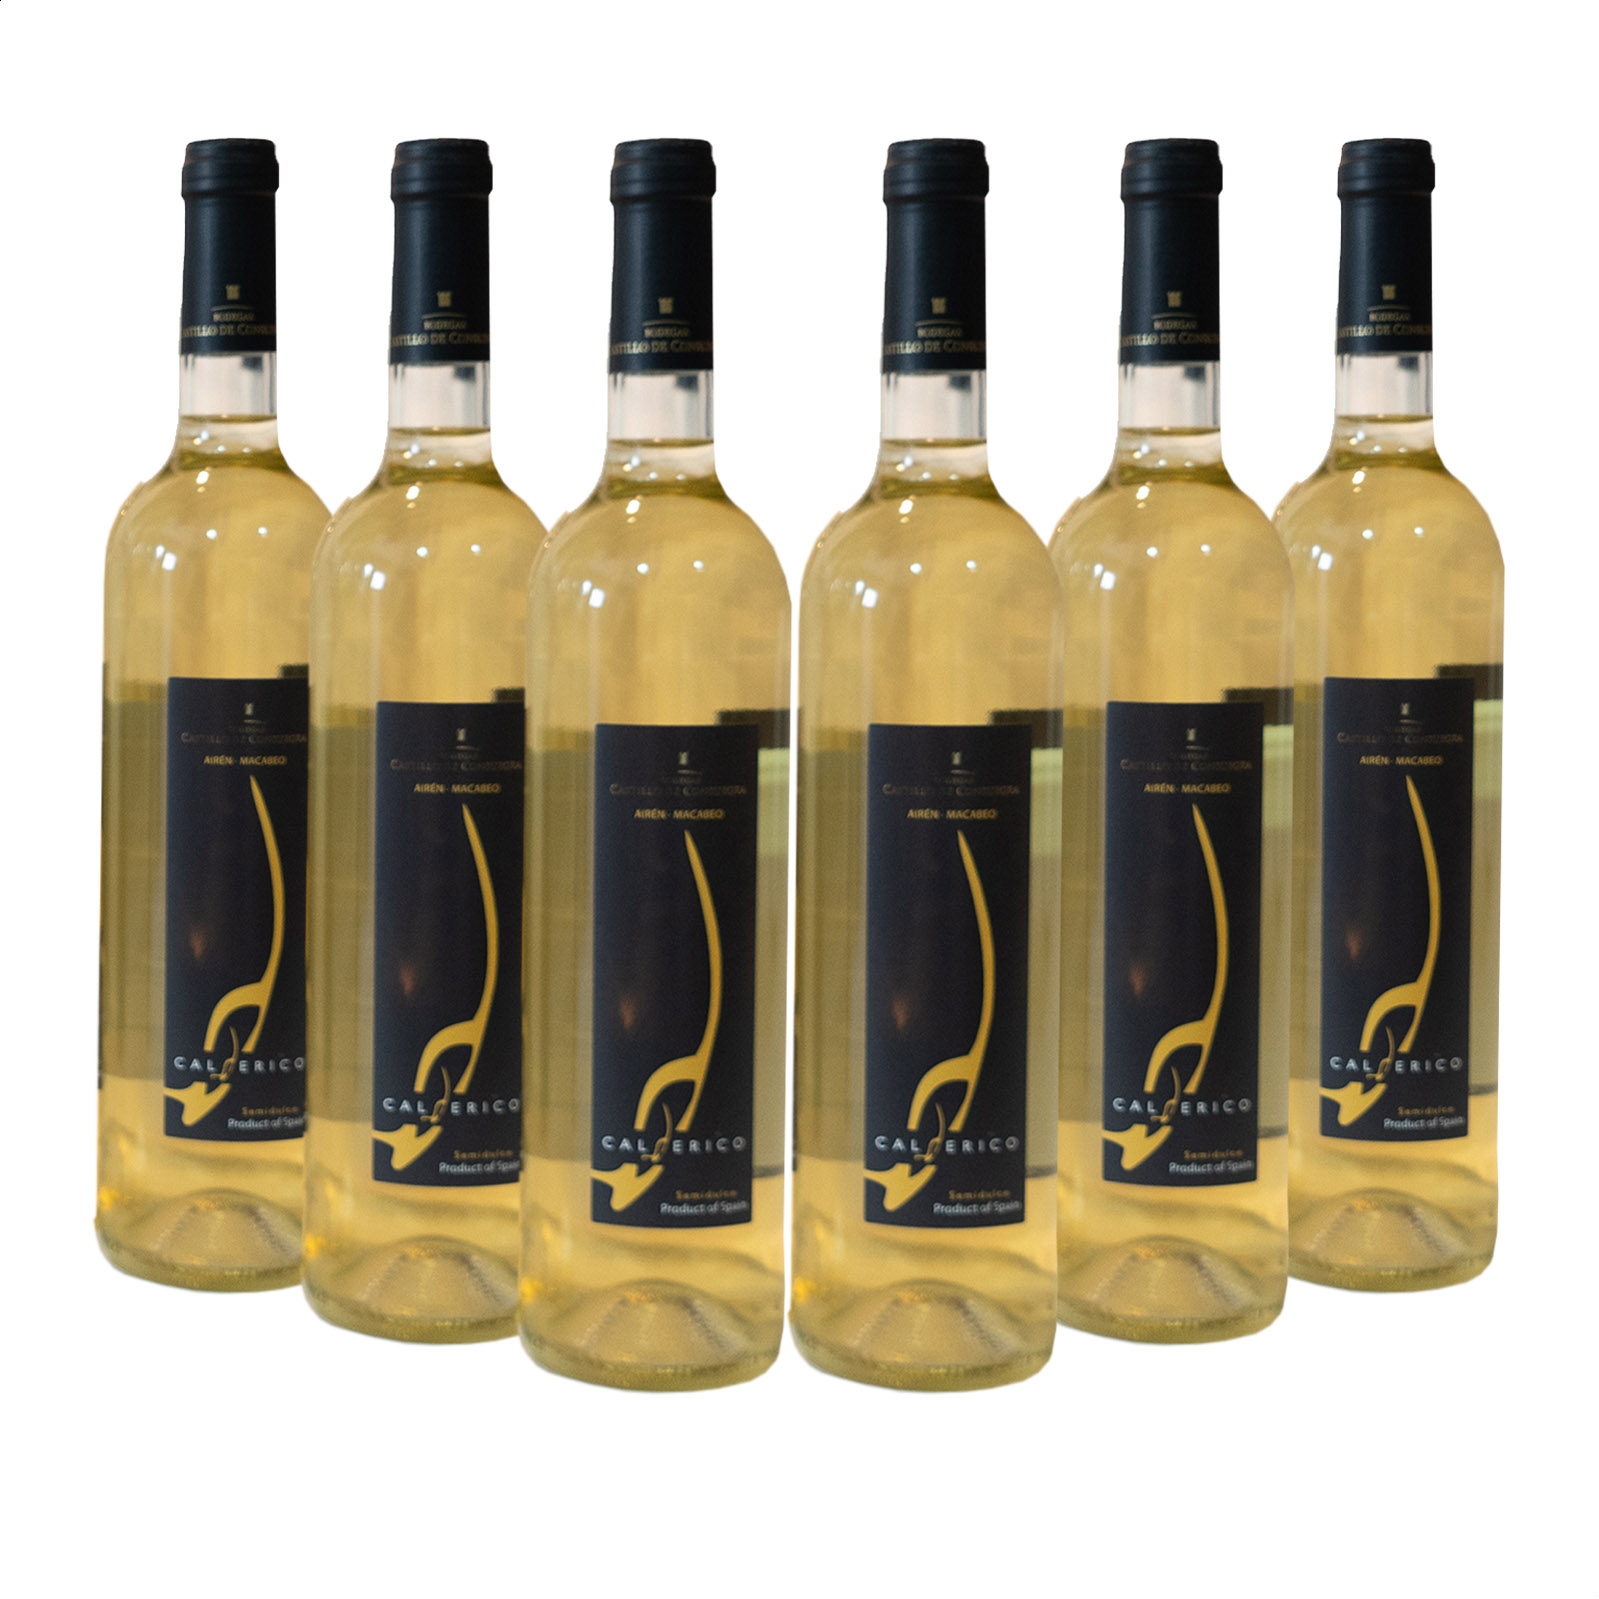 Calderico - Vino blanco semidulce D.O.P. La Mancha 75cl, 6uds